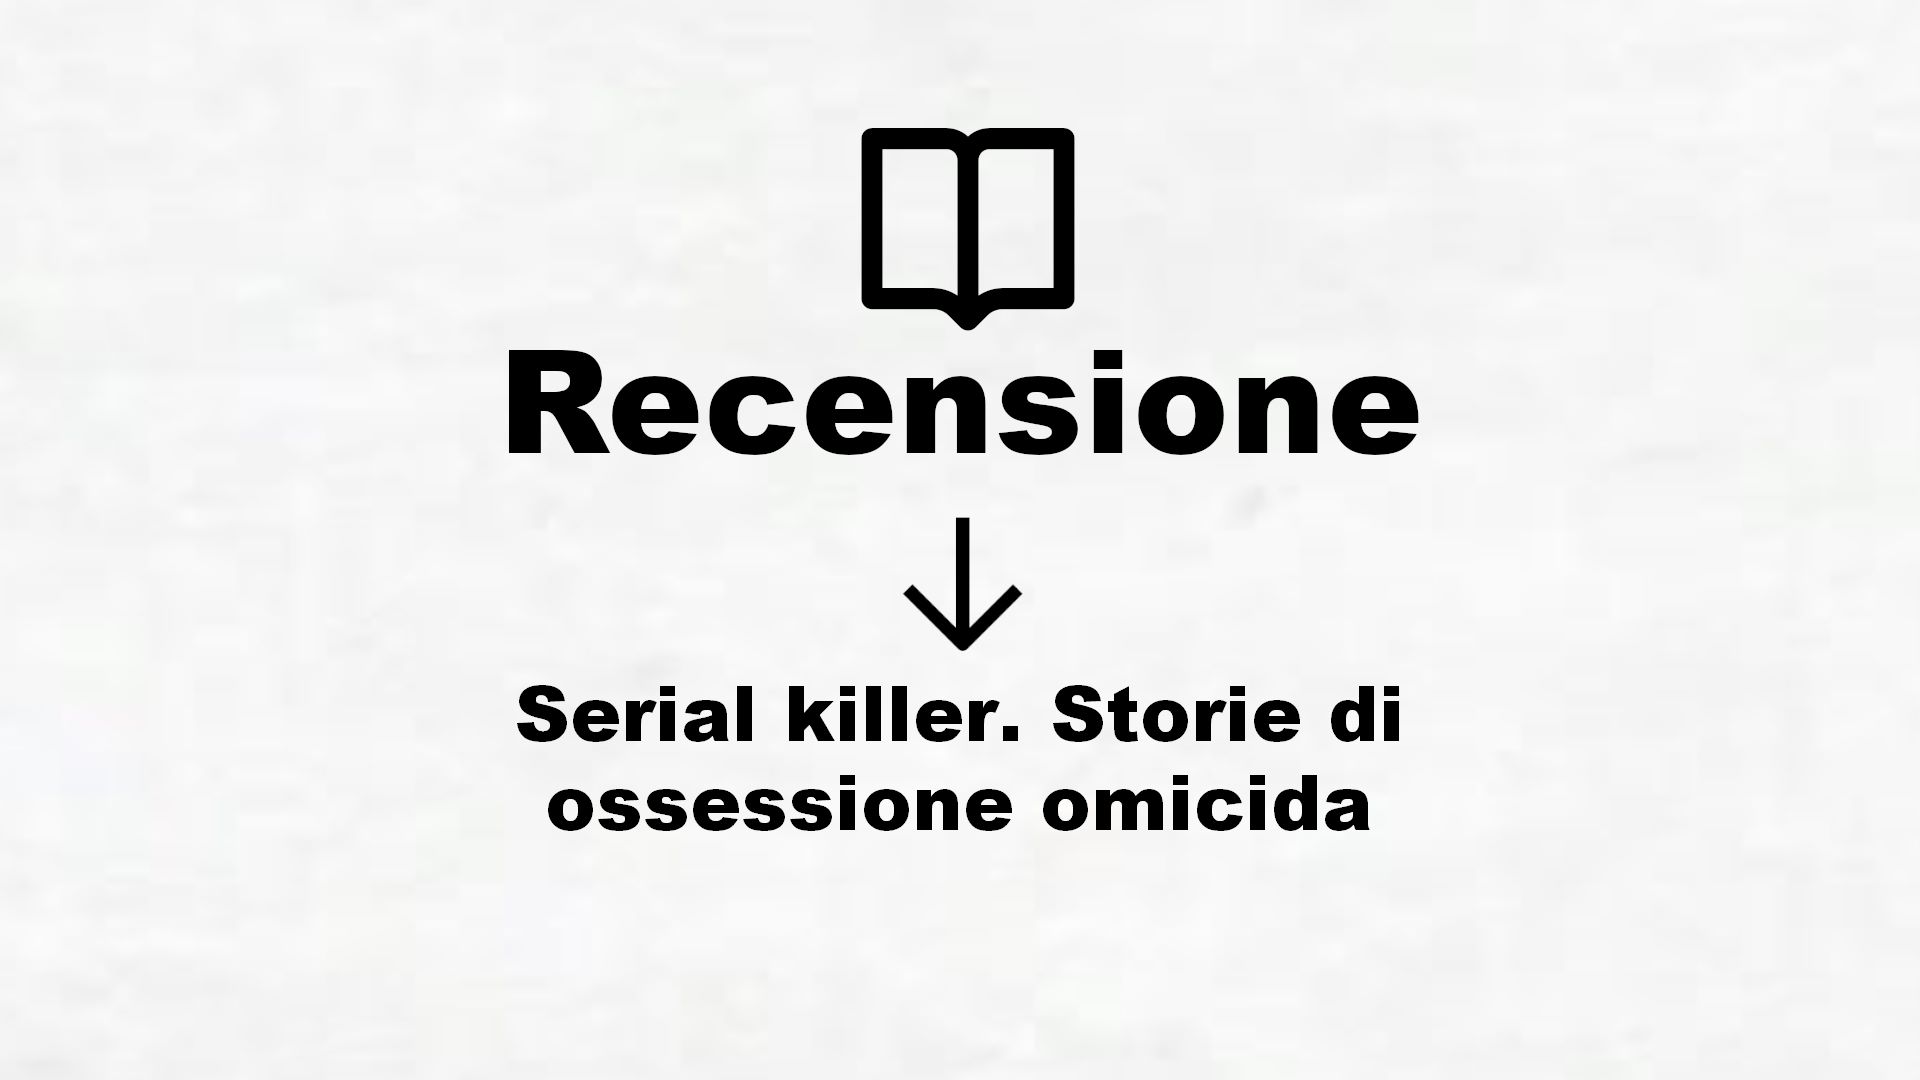 Serial killer. Storie di ossessione omicida – Recensione Libro